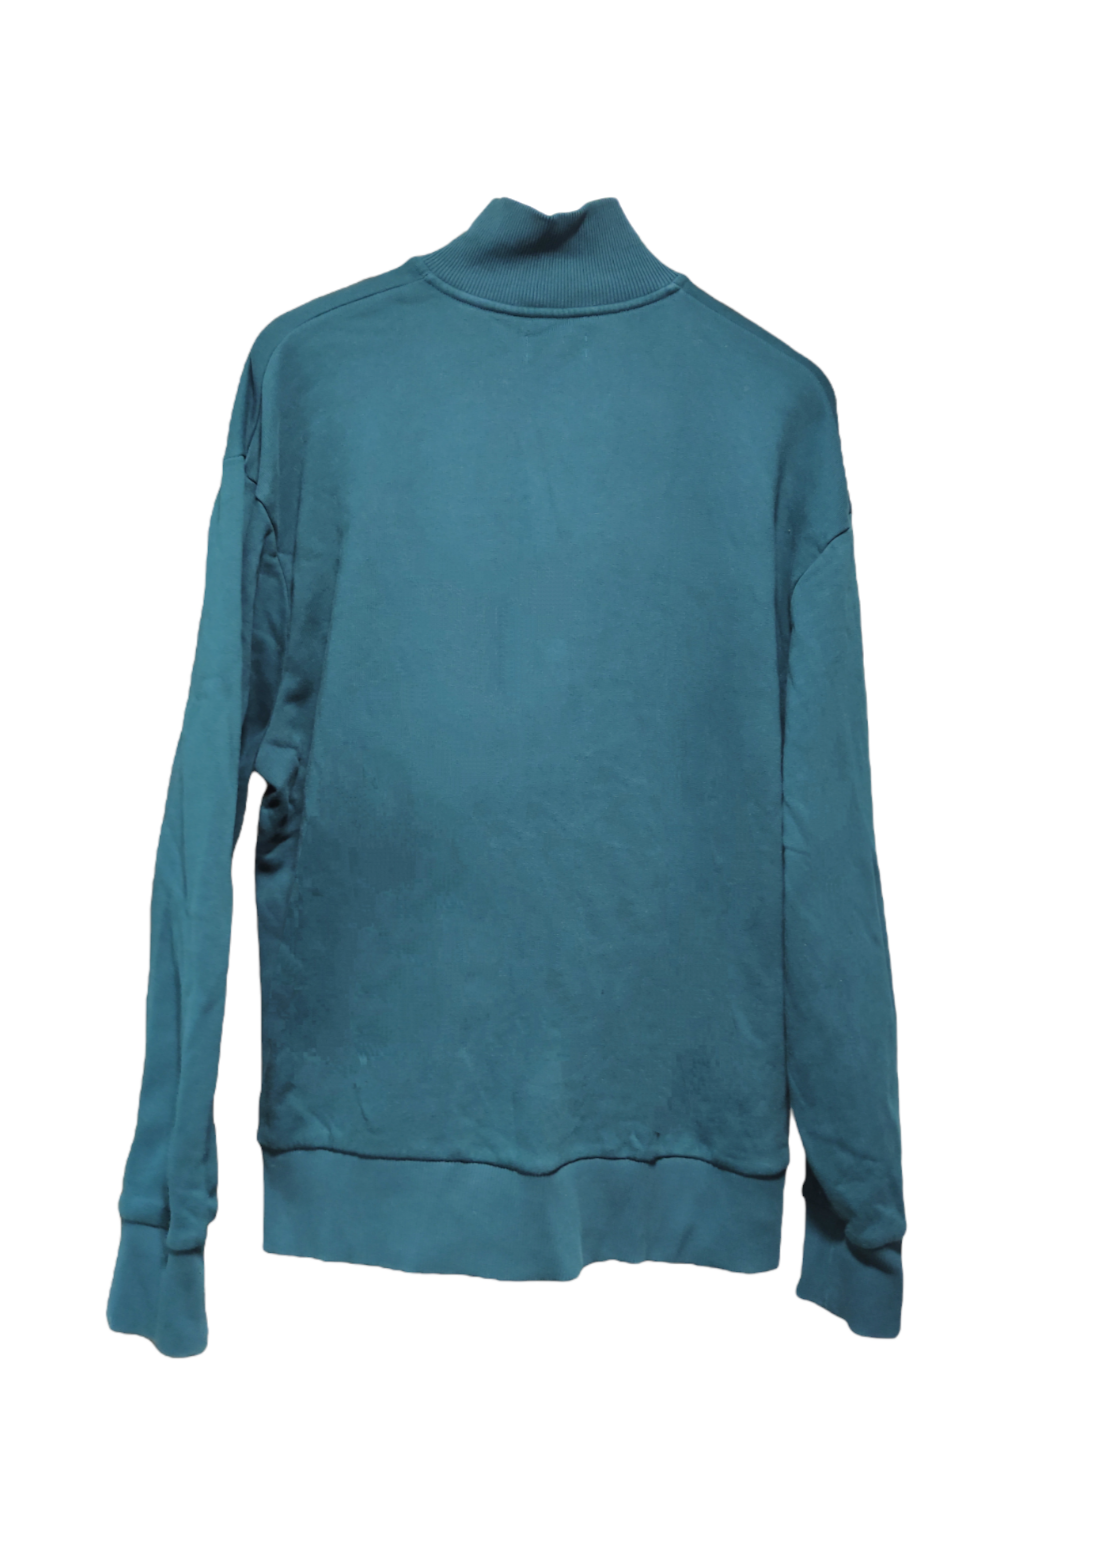 Ανδρική Φούτερ Μπλούζα TOPMAN σε Κυπαρισσί χρώμα (Large)